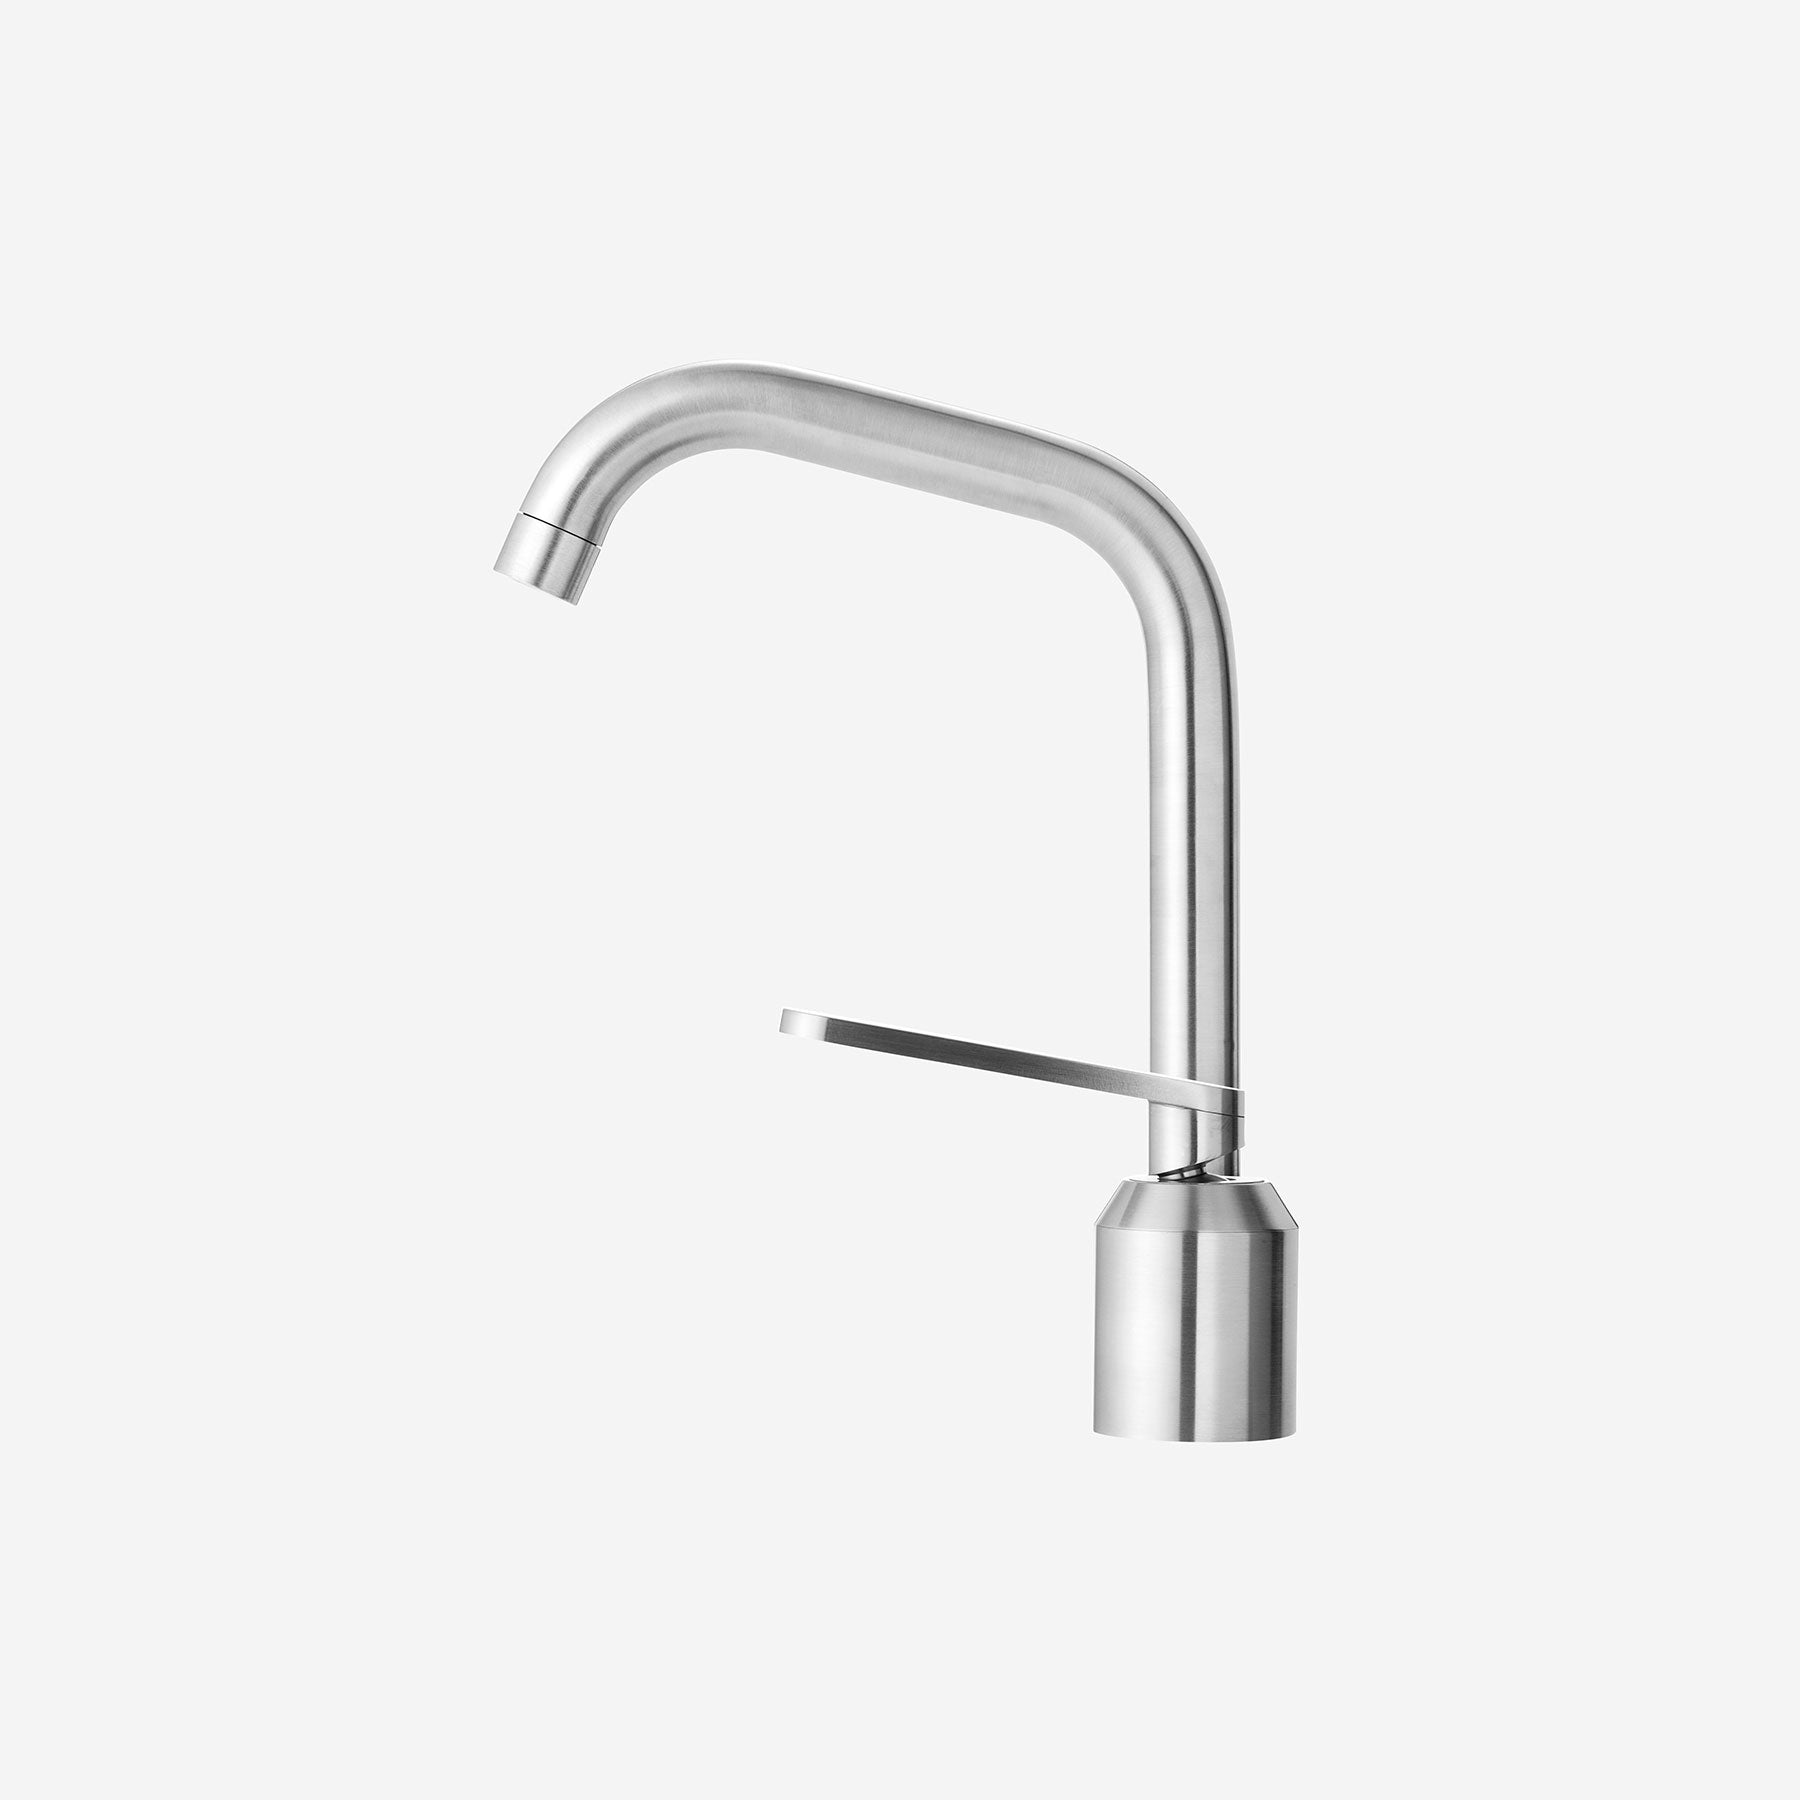 VIPP906 Bathroom tap - Moleta Munro Limited